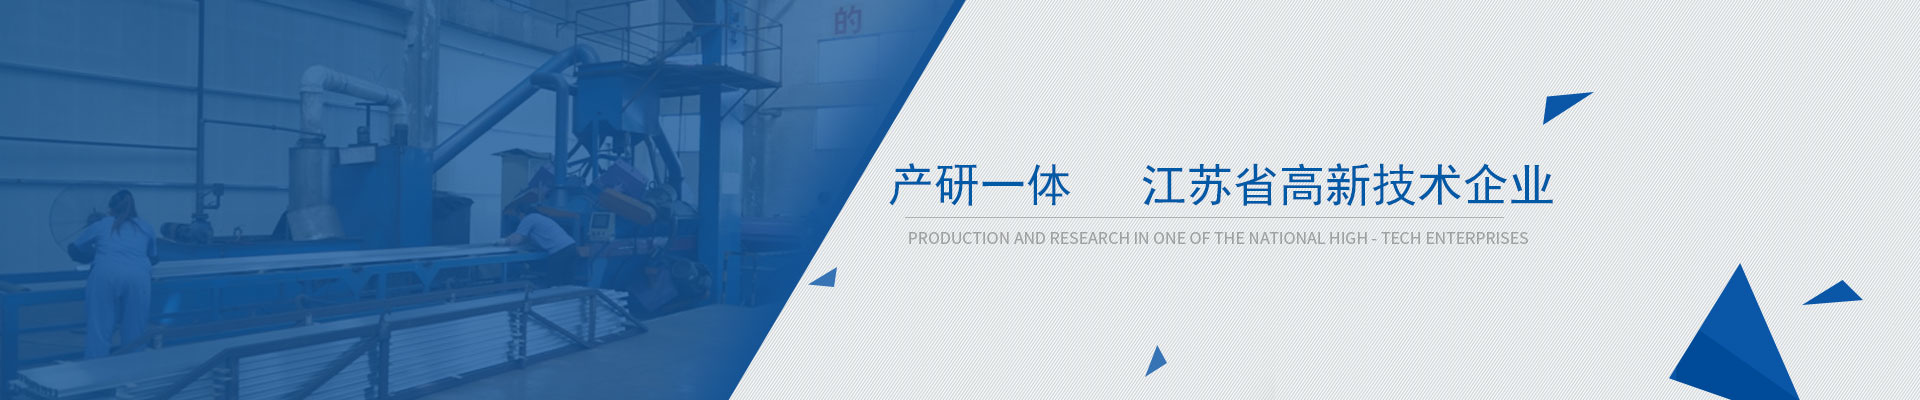 鸿发产研一体，江苏省高新技术企业